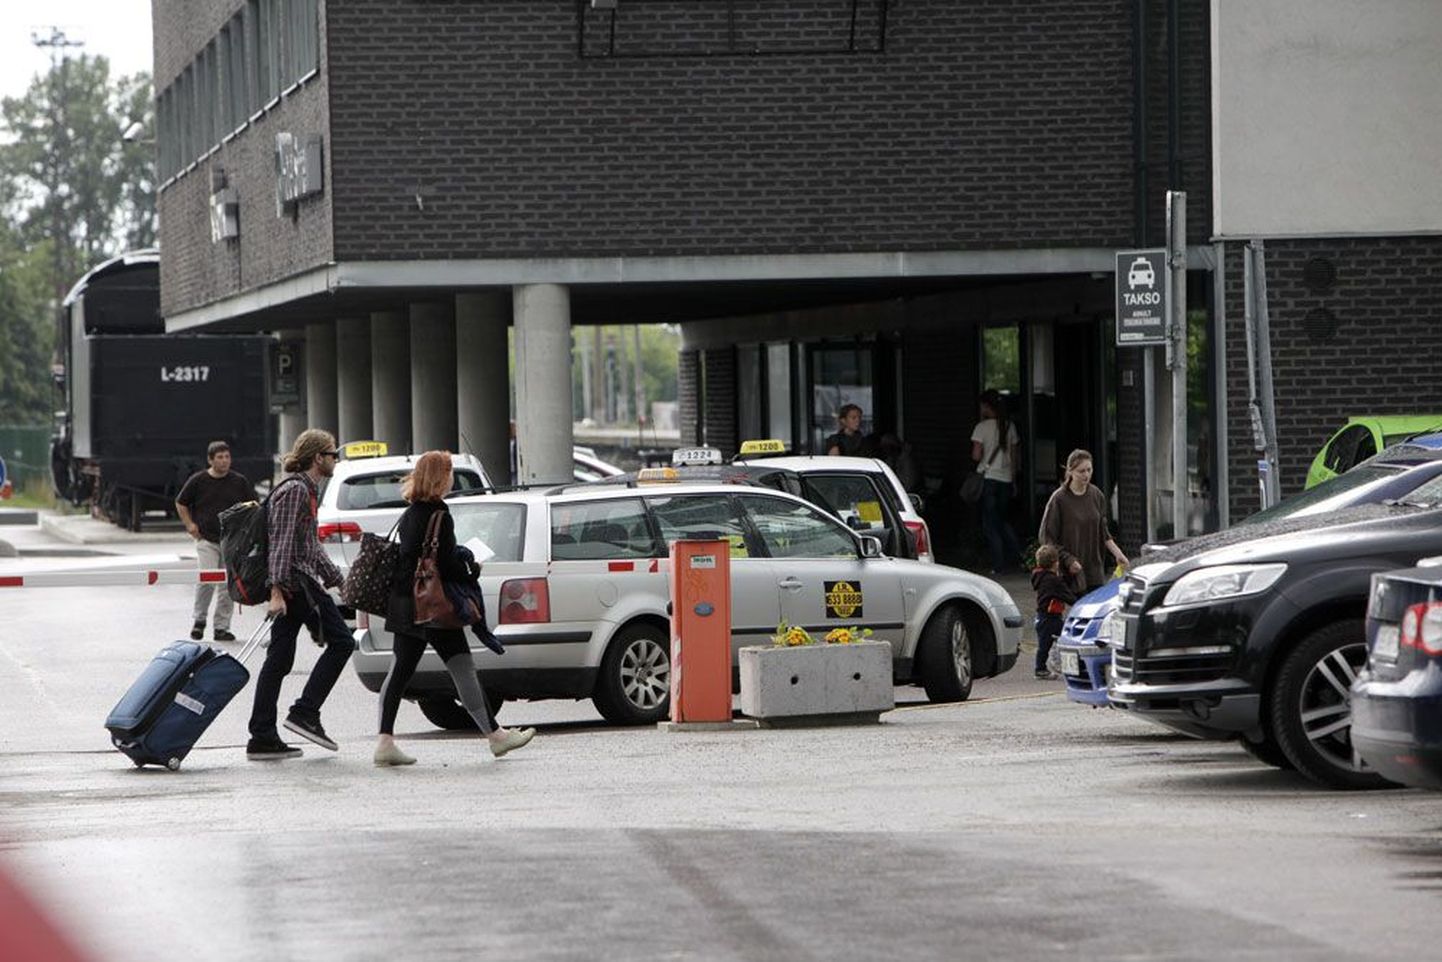 Корреспондент Рostimees прибыл на Балтийский вокзал в надежде обнаружить такси фирмы OÜ Traffic Оil, но на стоянке около вокзала в это время машин этой фирмы не было.